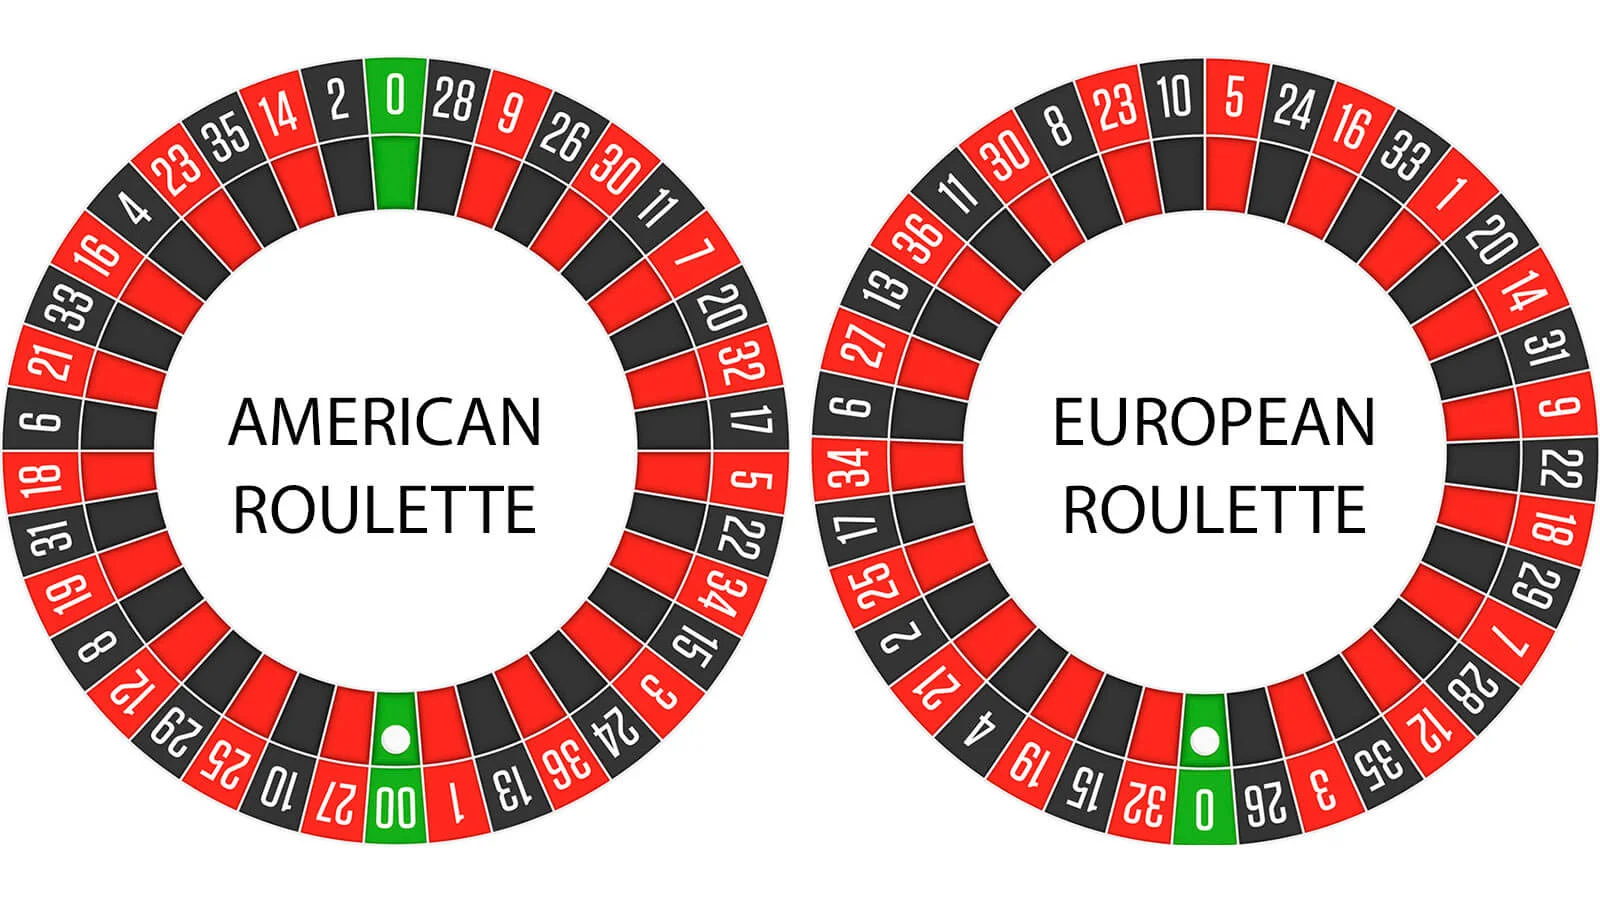 American Roulette Wheel vs European Roulette Wheel: Which is Best?